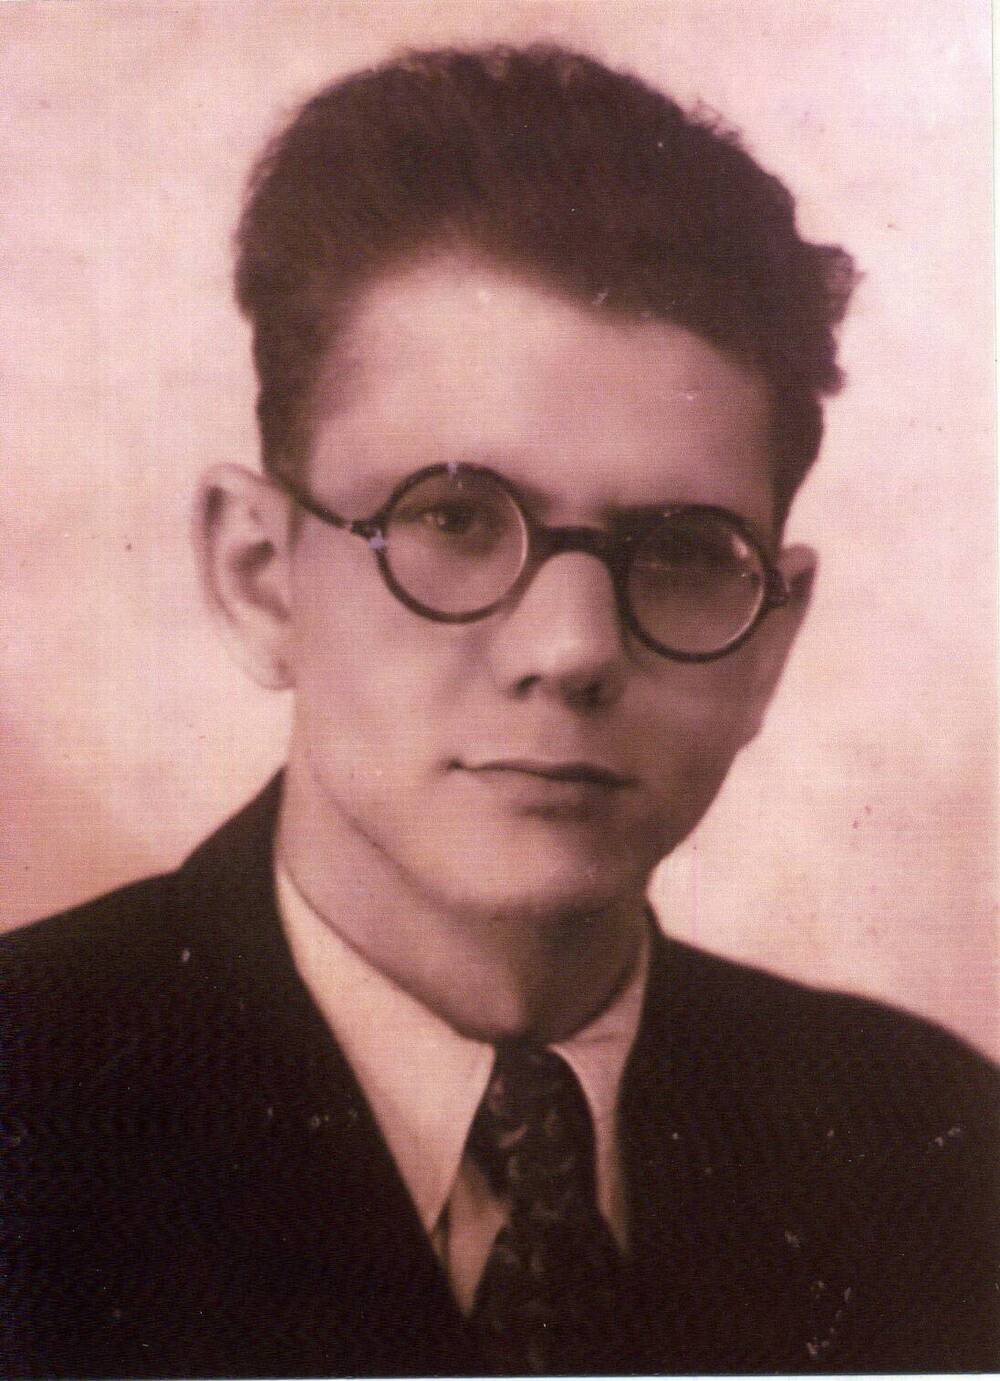 Фотография. Владимир Чивилихин студент Московского государственного университета, 1949 год, г.Москва.